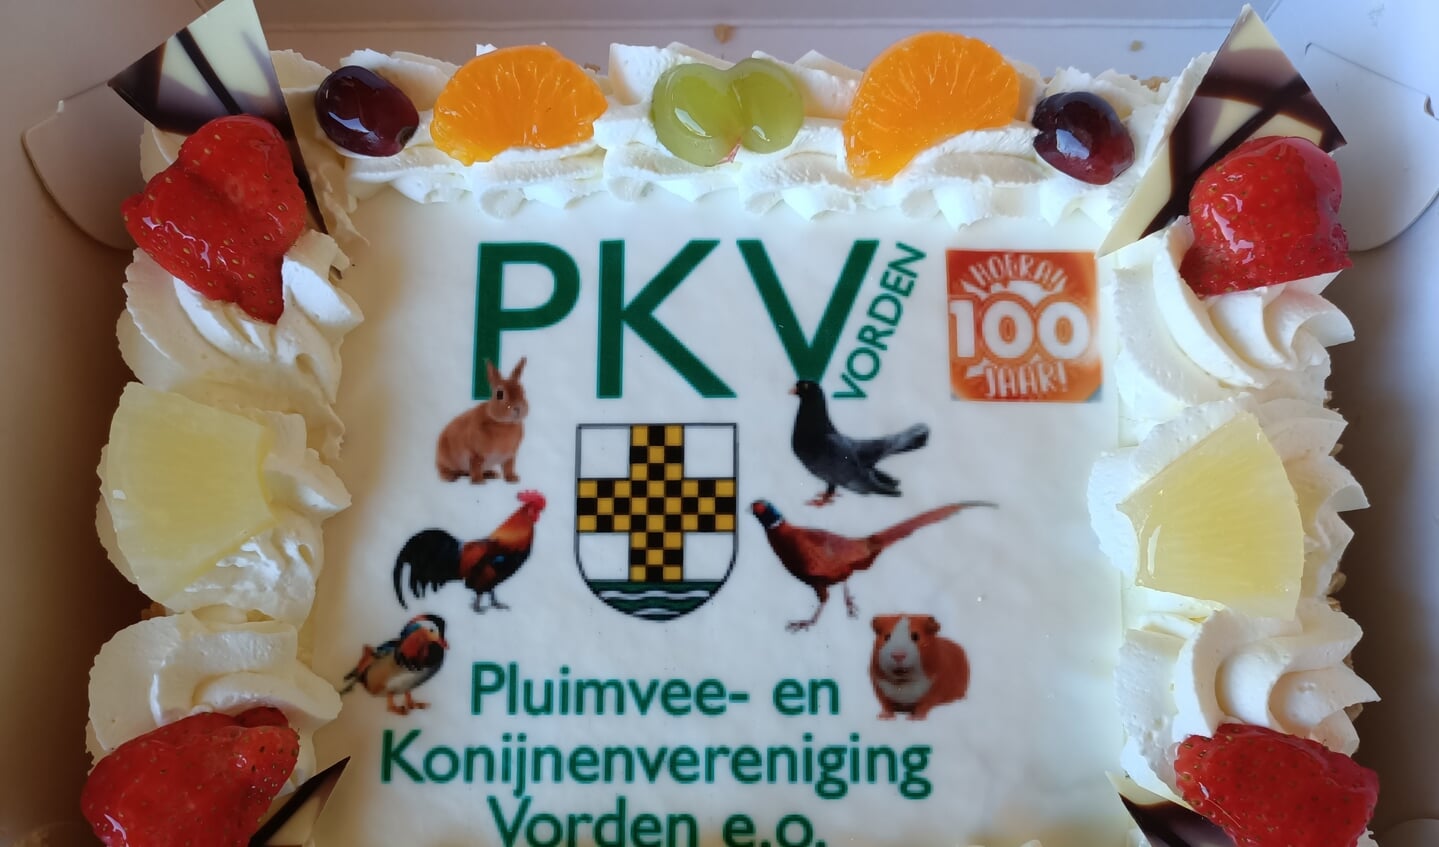 Tijdens de uitreiking van de cheque door bedrijfsleidster Geralde Tiessink aan de voorzitter Gerrit Lenselink heeft P.K.V. e.o. als waardering voor deze actie een taart aangeboden aan de medewerkers van Welkoop Vorden. Foto: PR